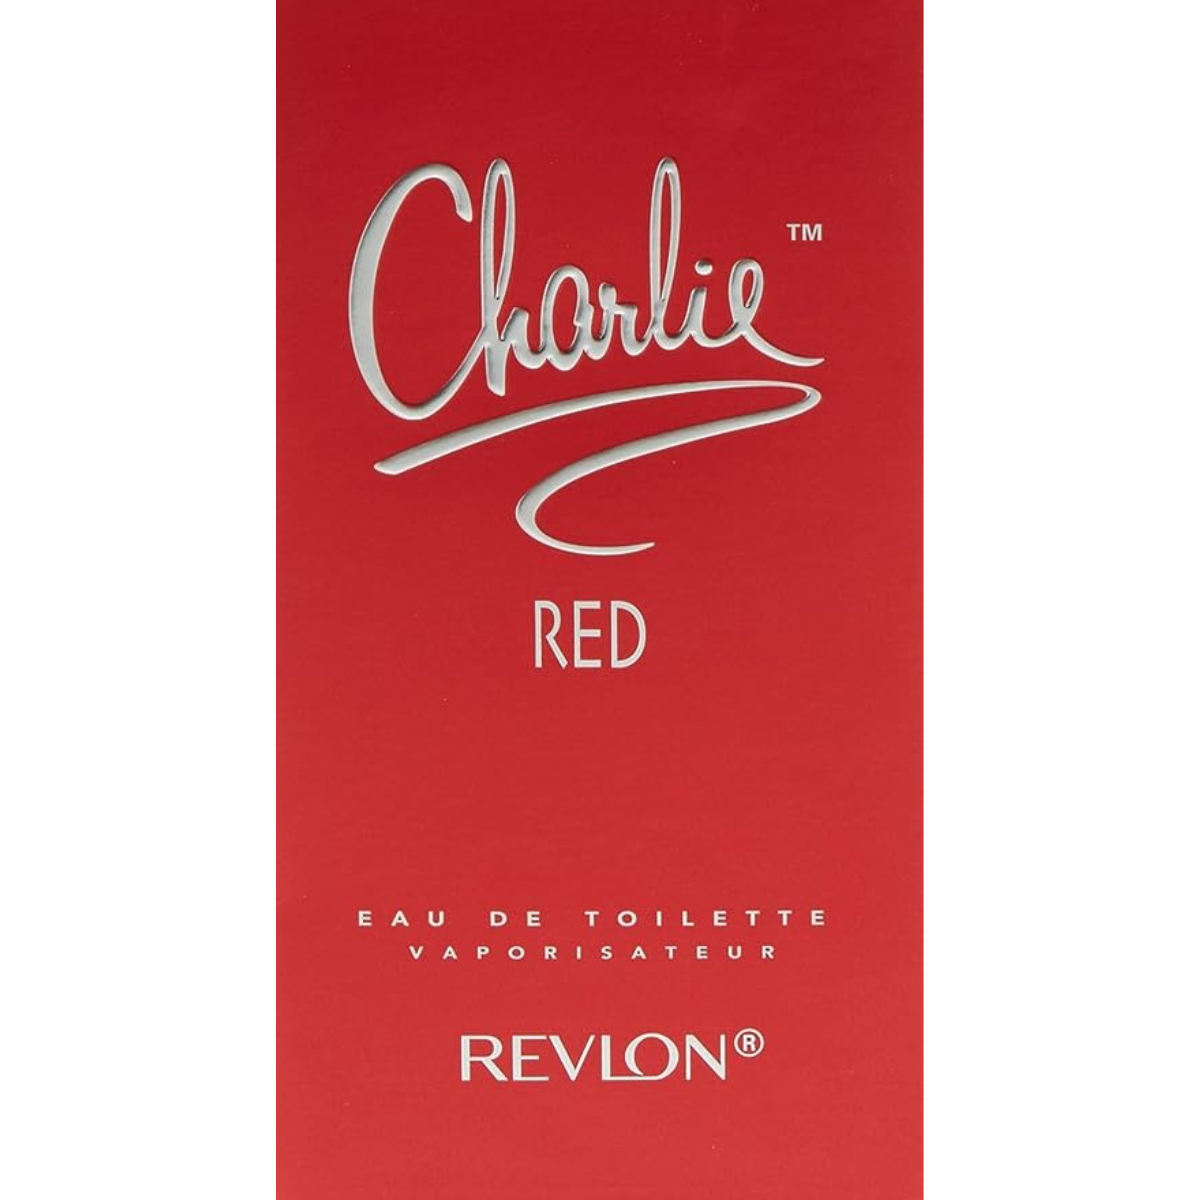 Revlon Charlie Red 100 ml EDT for women perfume-2